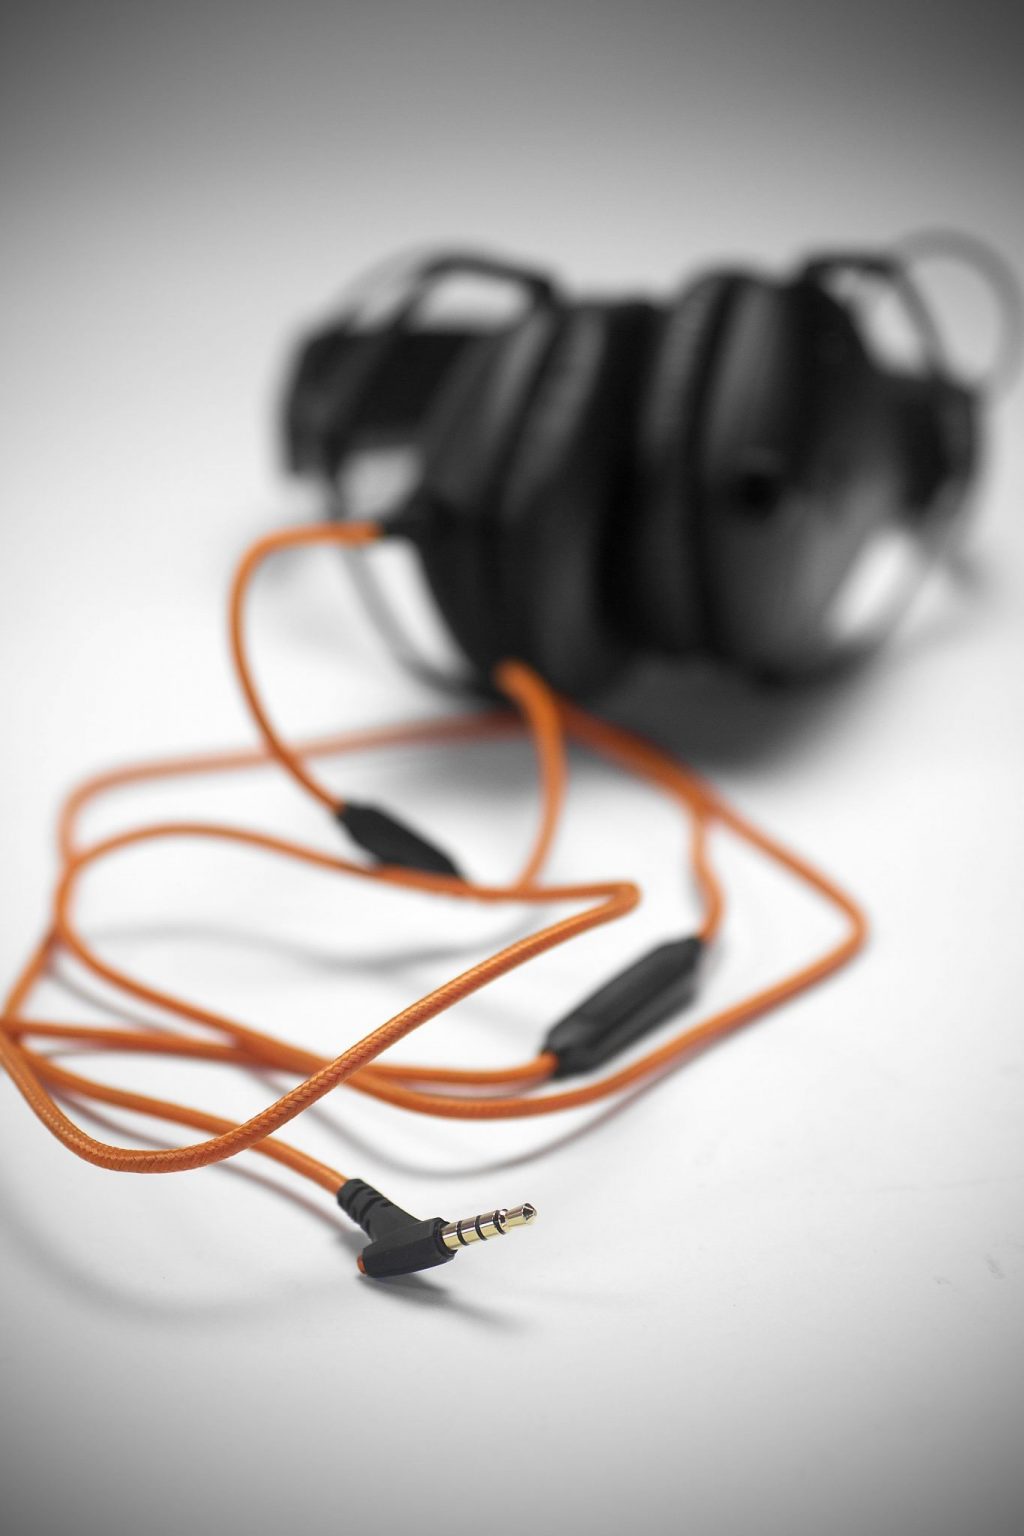 V-MODA Crossfade M-100 DJ headphones review (8)